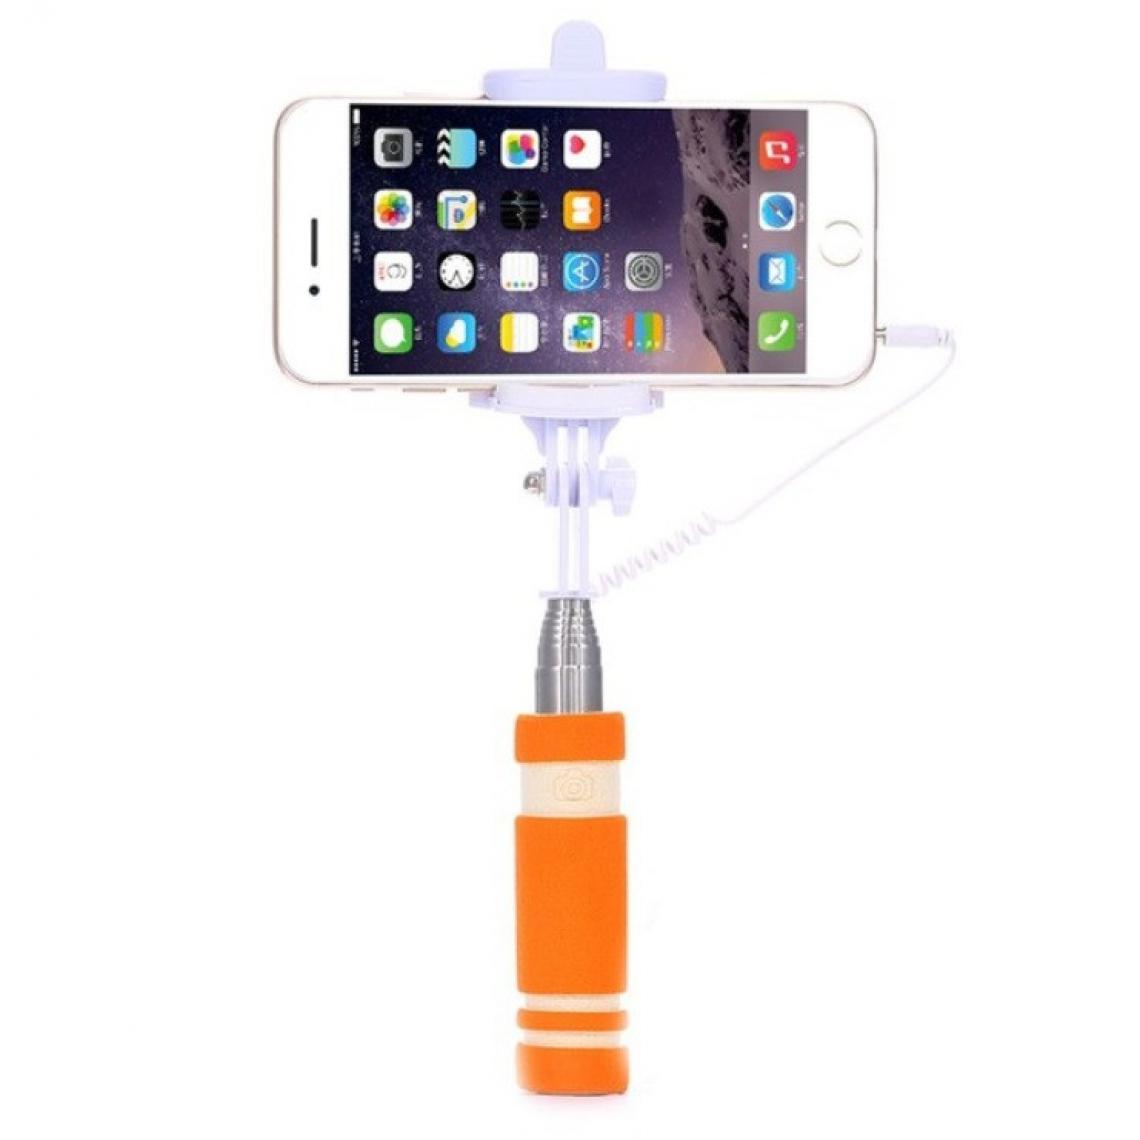 Shot - Mini Perche Selfie pour ALCATEL 1 2019 Smartphone avec Cable Jack Selfie Stick Android IOS Reglable Bouton Photo (ORANGE) - Autres accessoires smartphone